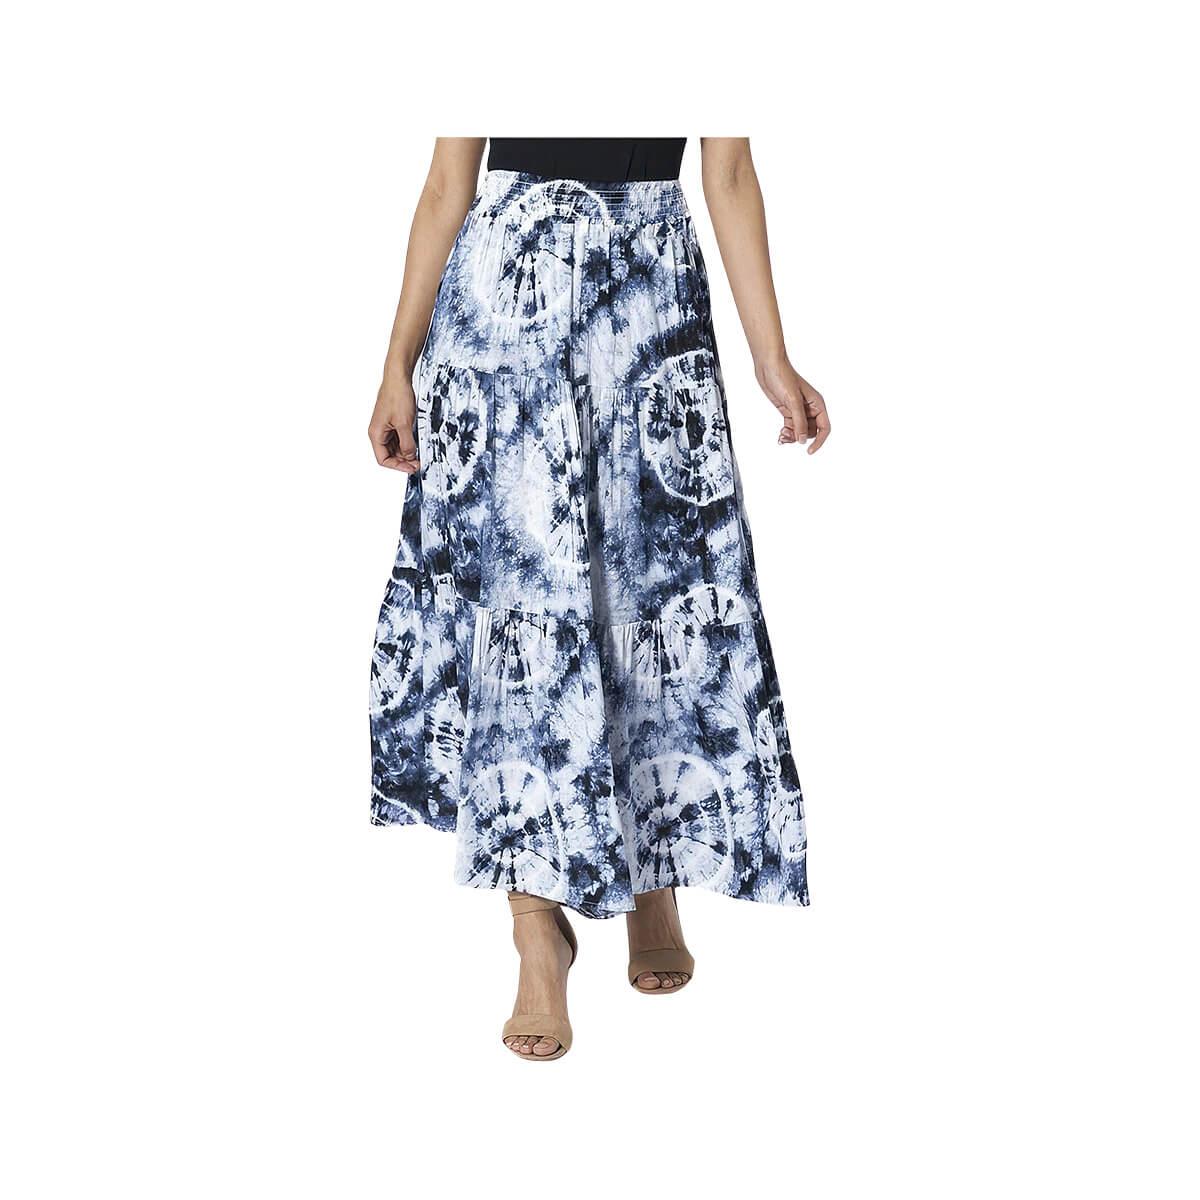  Women's Gracie Flowy Skirt